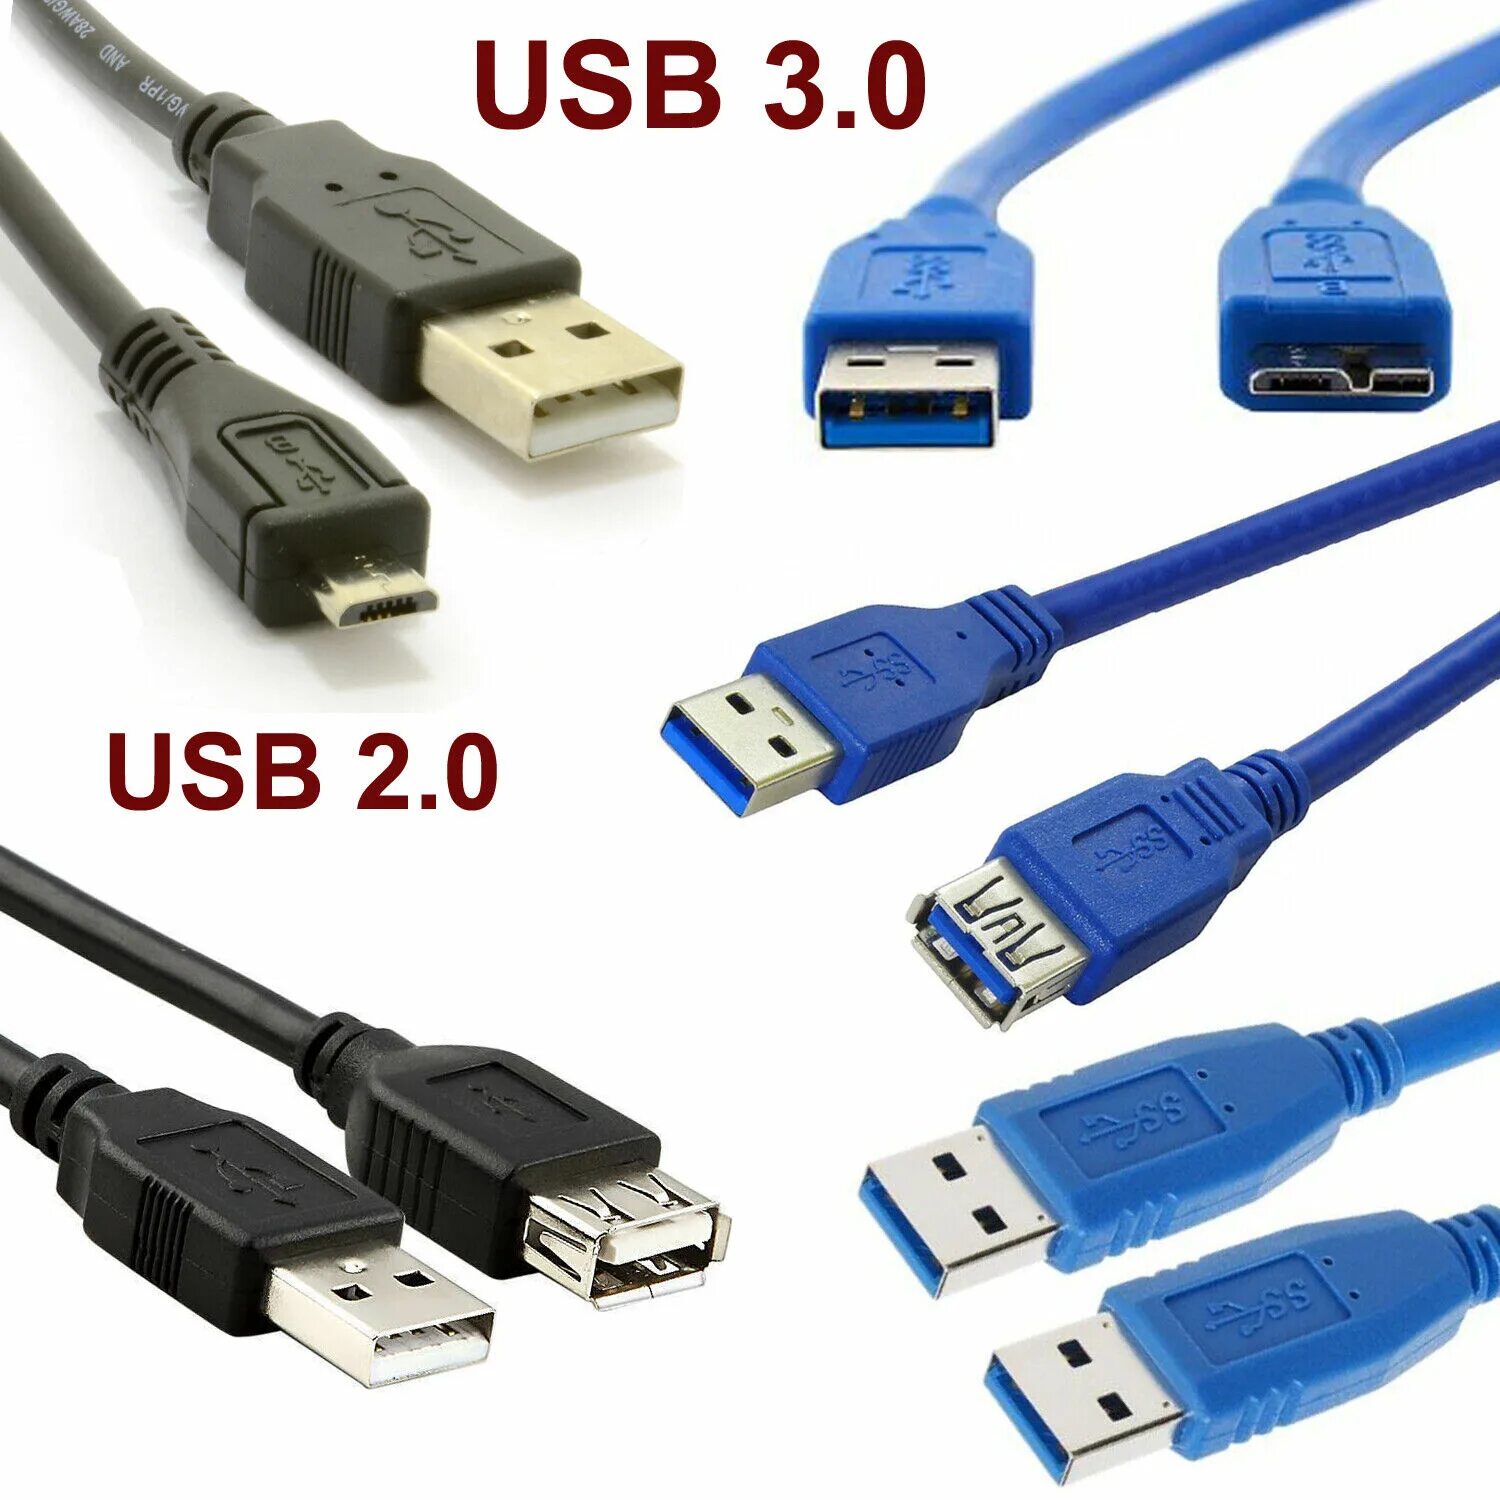 Как отличить usb. УСБ 3ю1. Юсб 2.0 и 3.0. USB 3.0 И USB 2.0. Кабель удлинитель юсб 2.0.